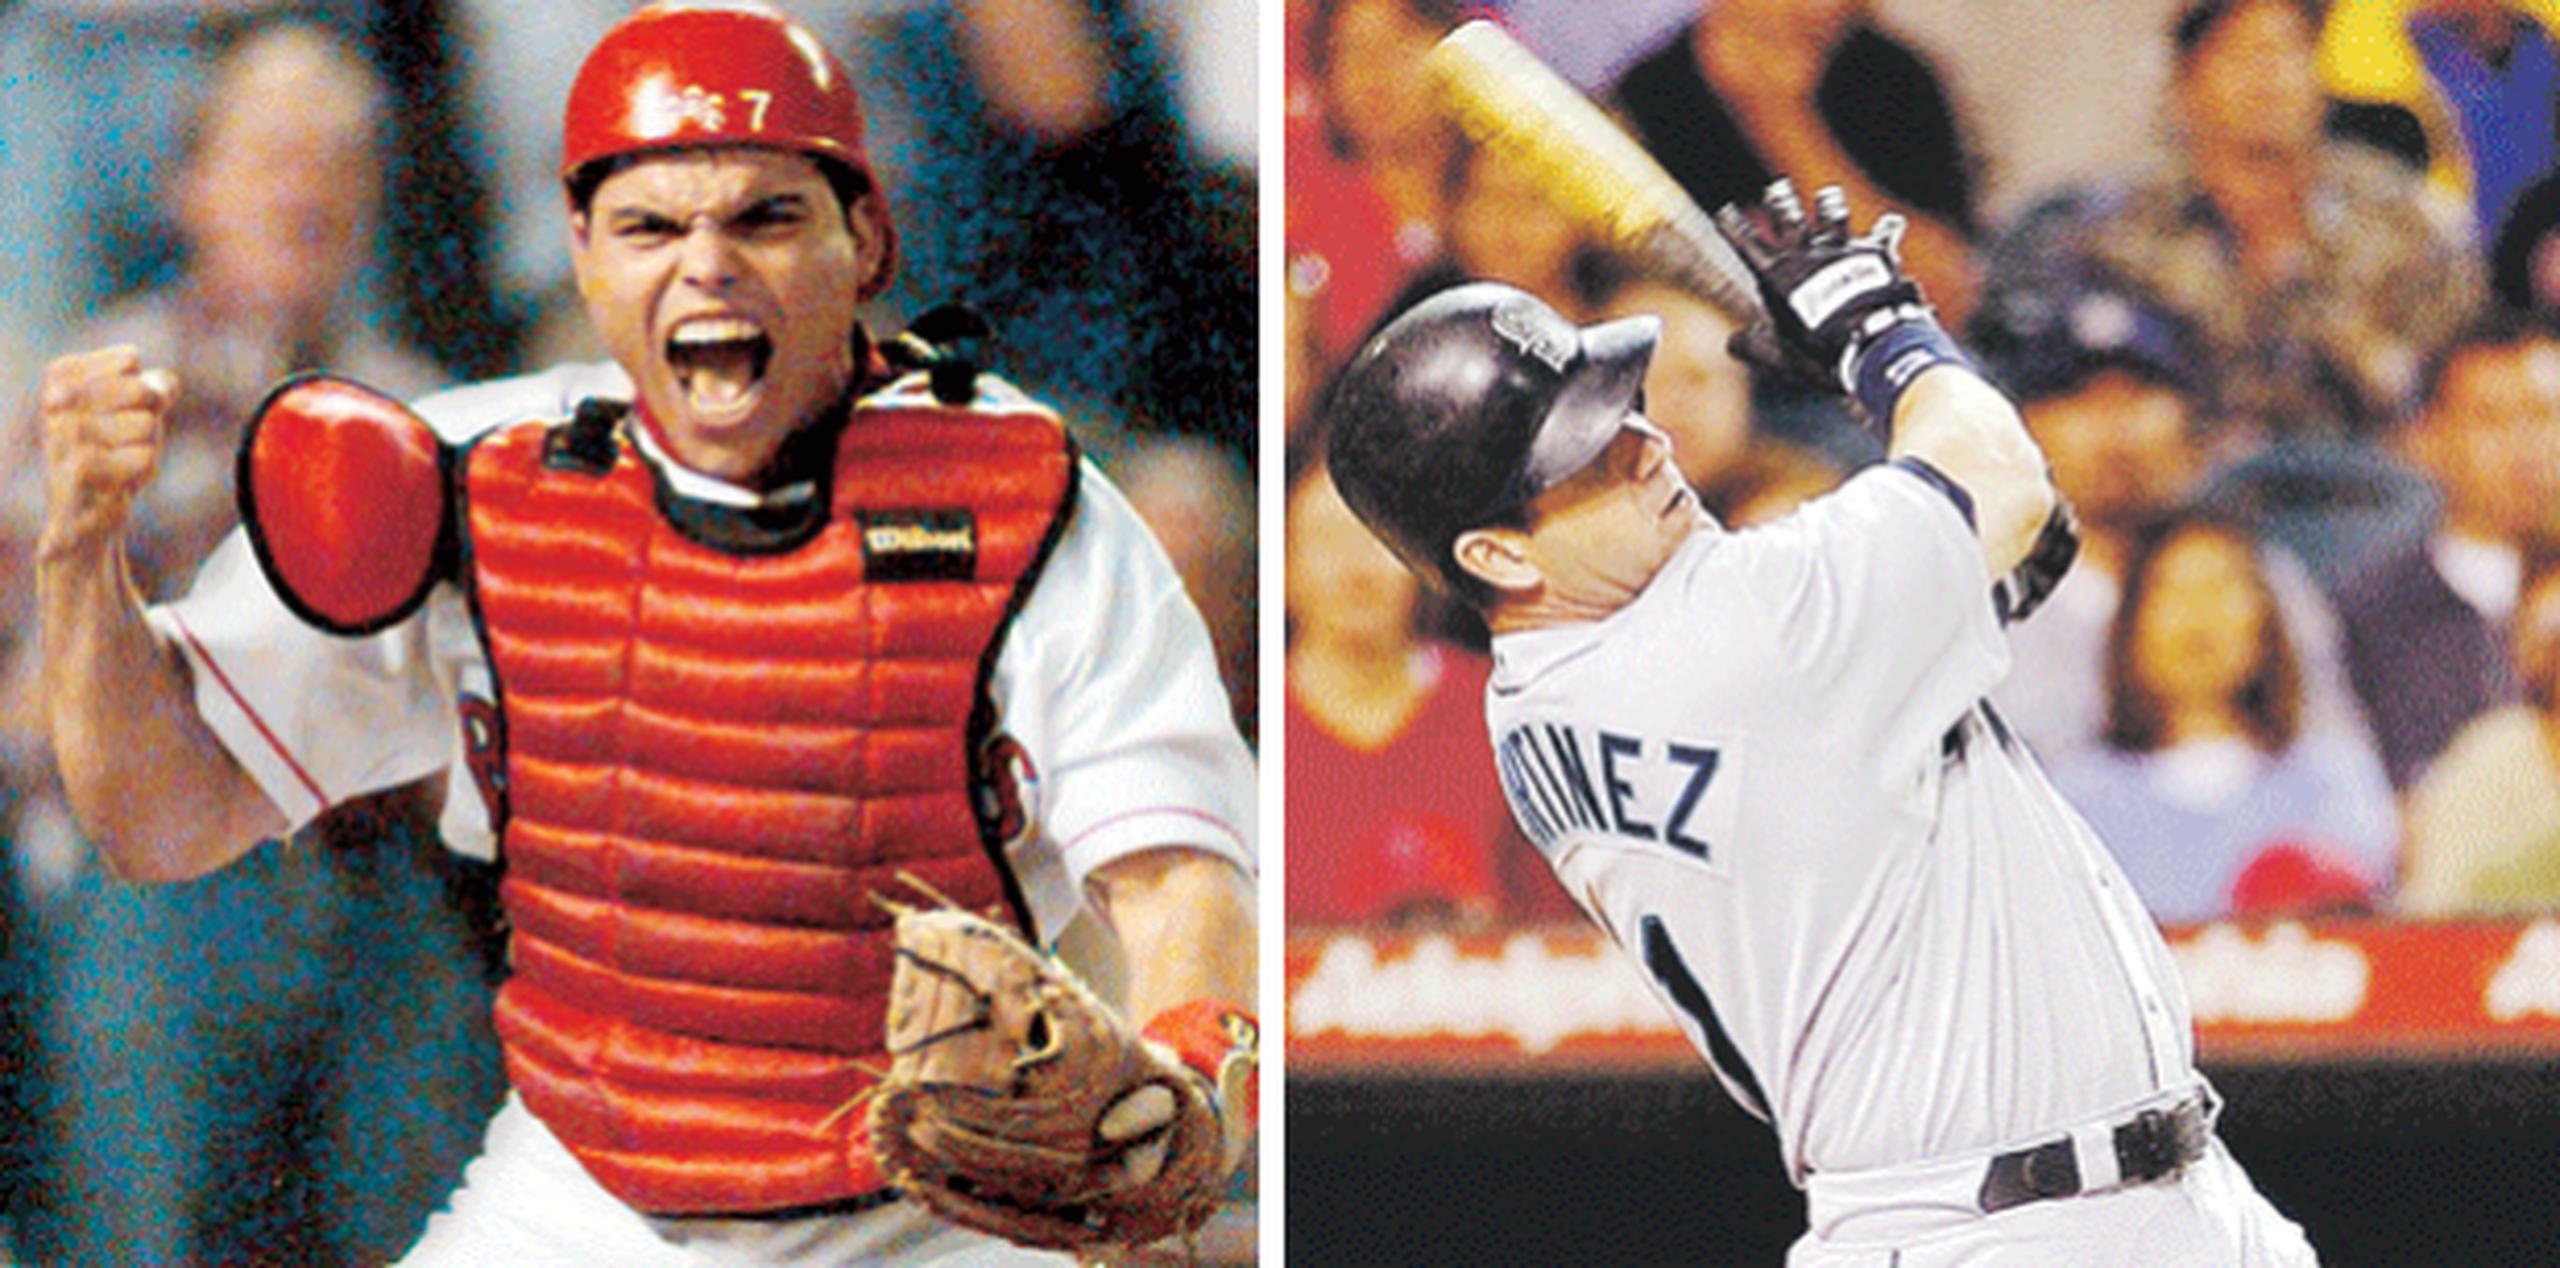 Iván Rodríguez y Edgar Martínez impactaron el béisbol con sus magistrales desempeños como receptor y bateador designado, respectivamente. (Archivo)